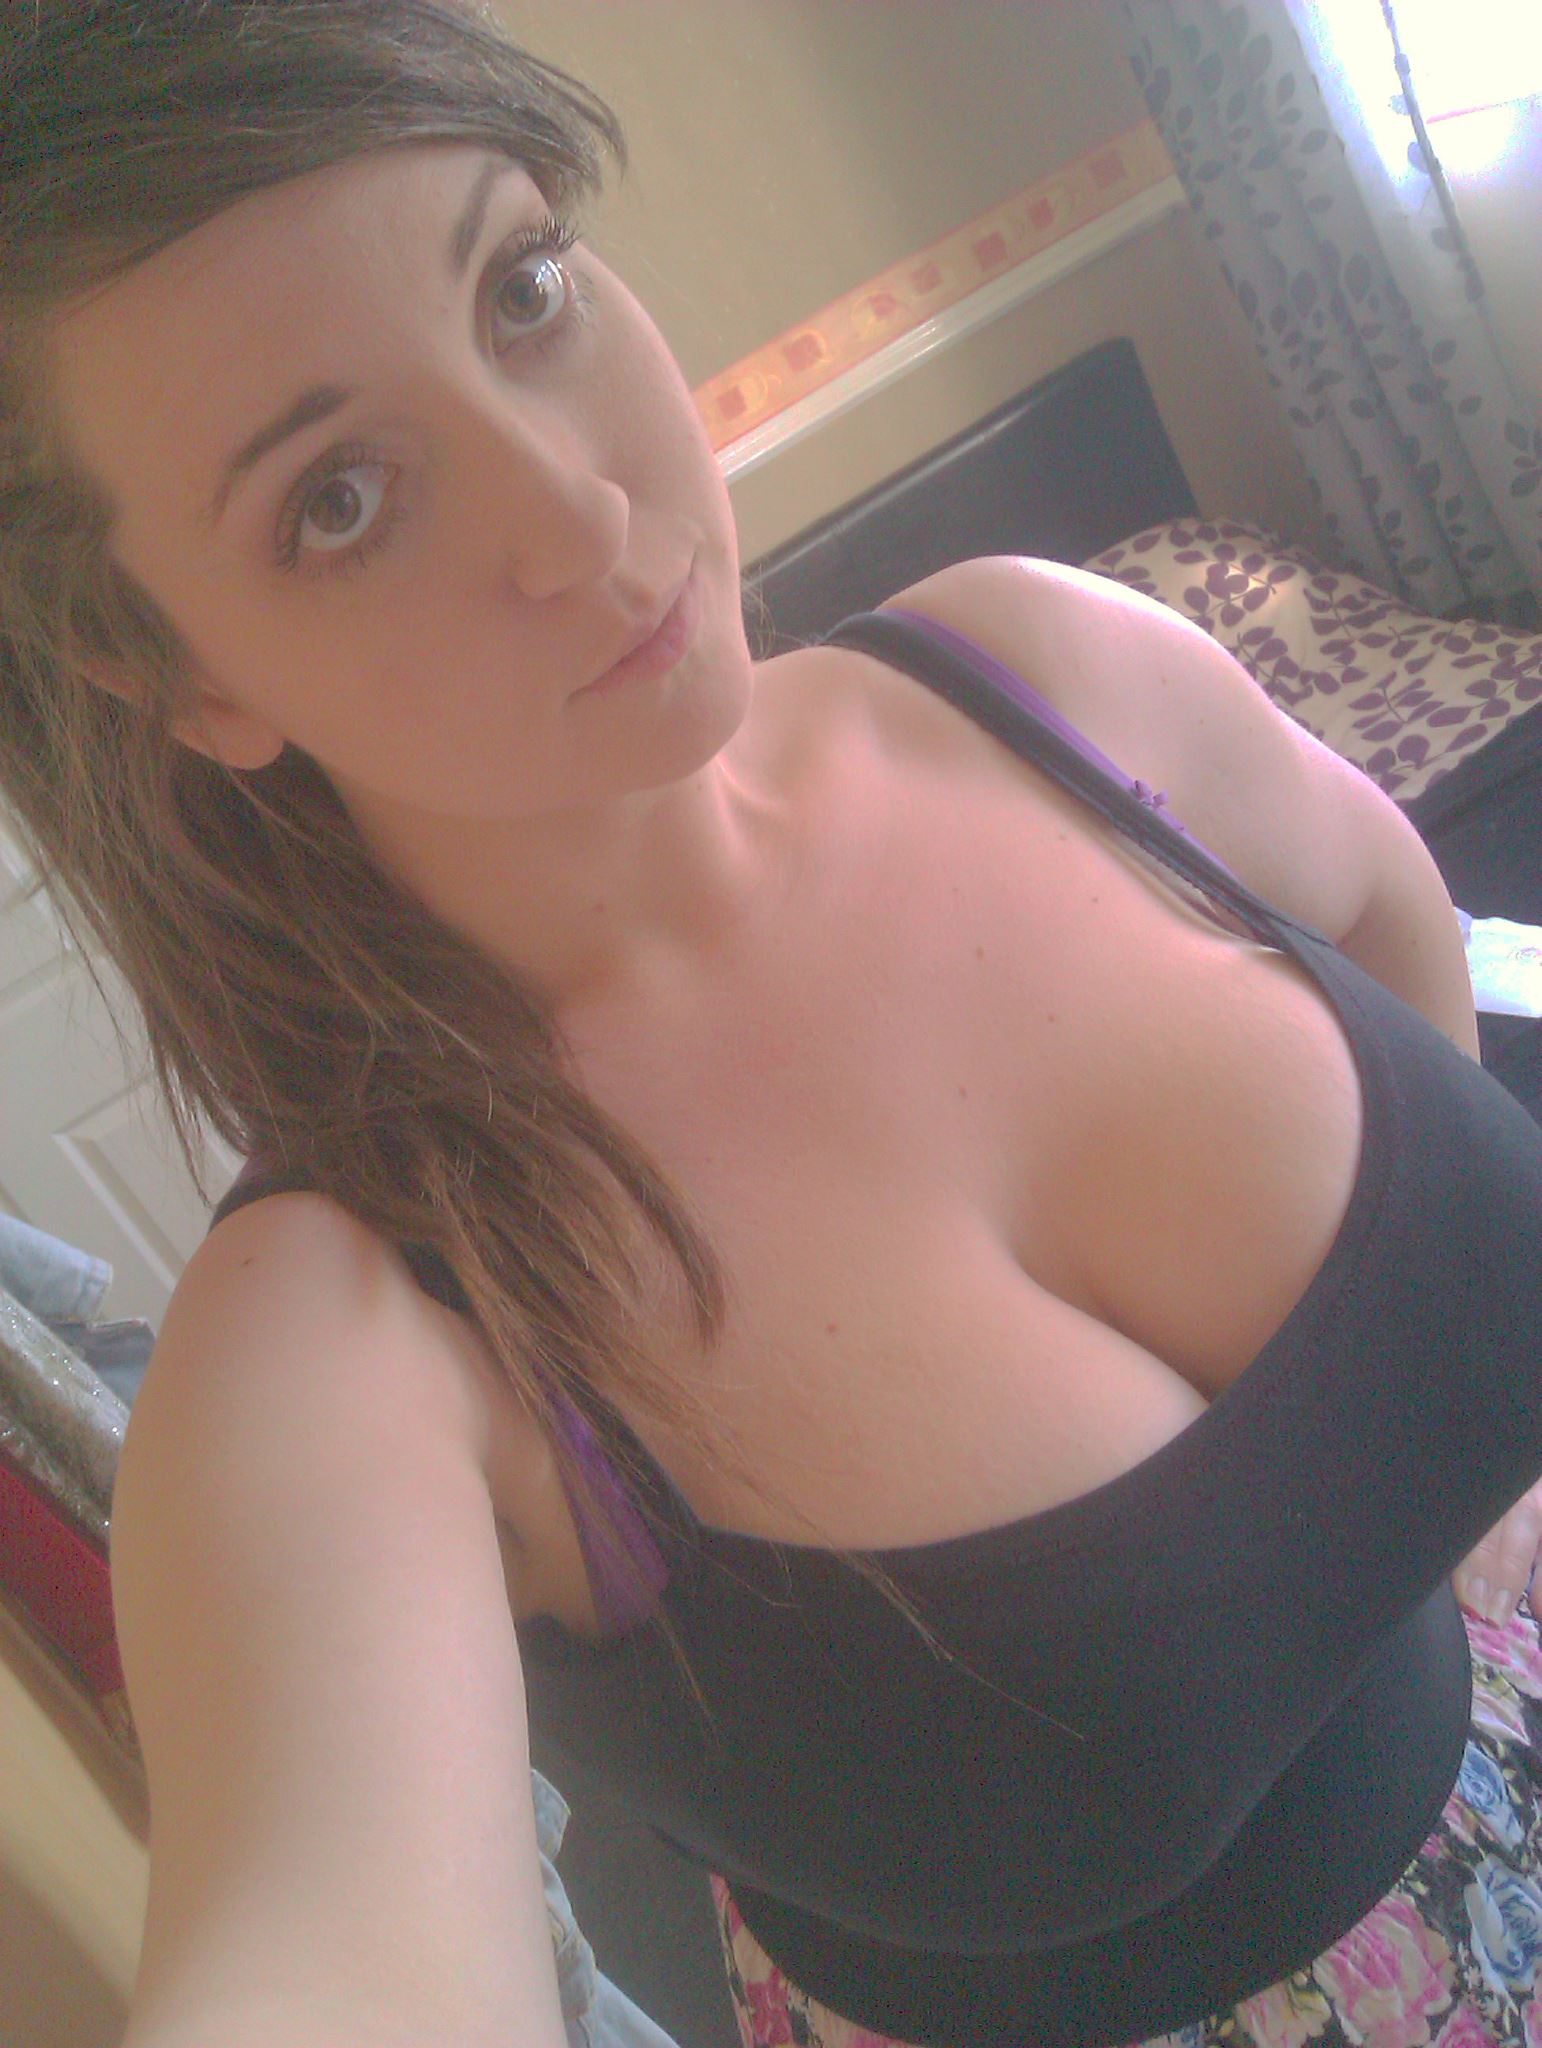 cleavage cum hot sexy selfie sex pics